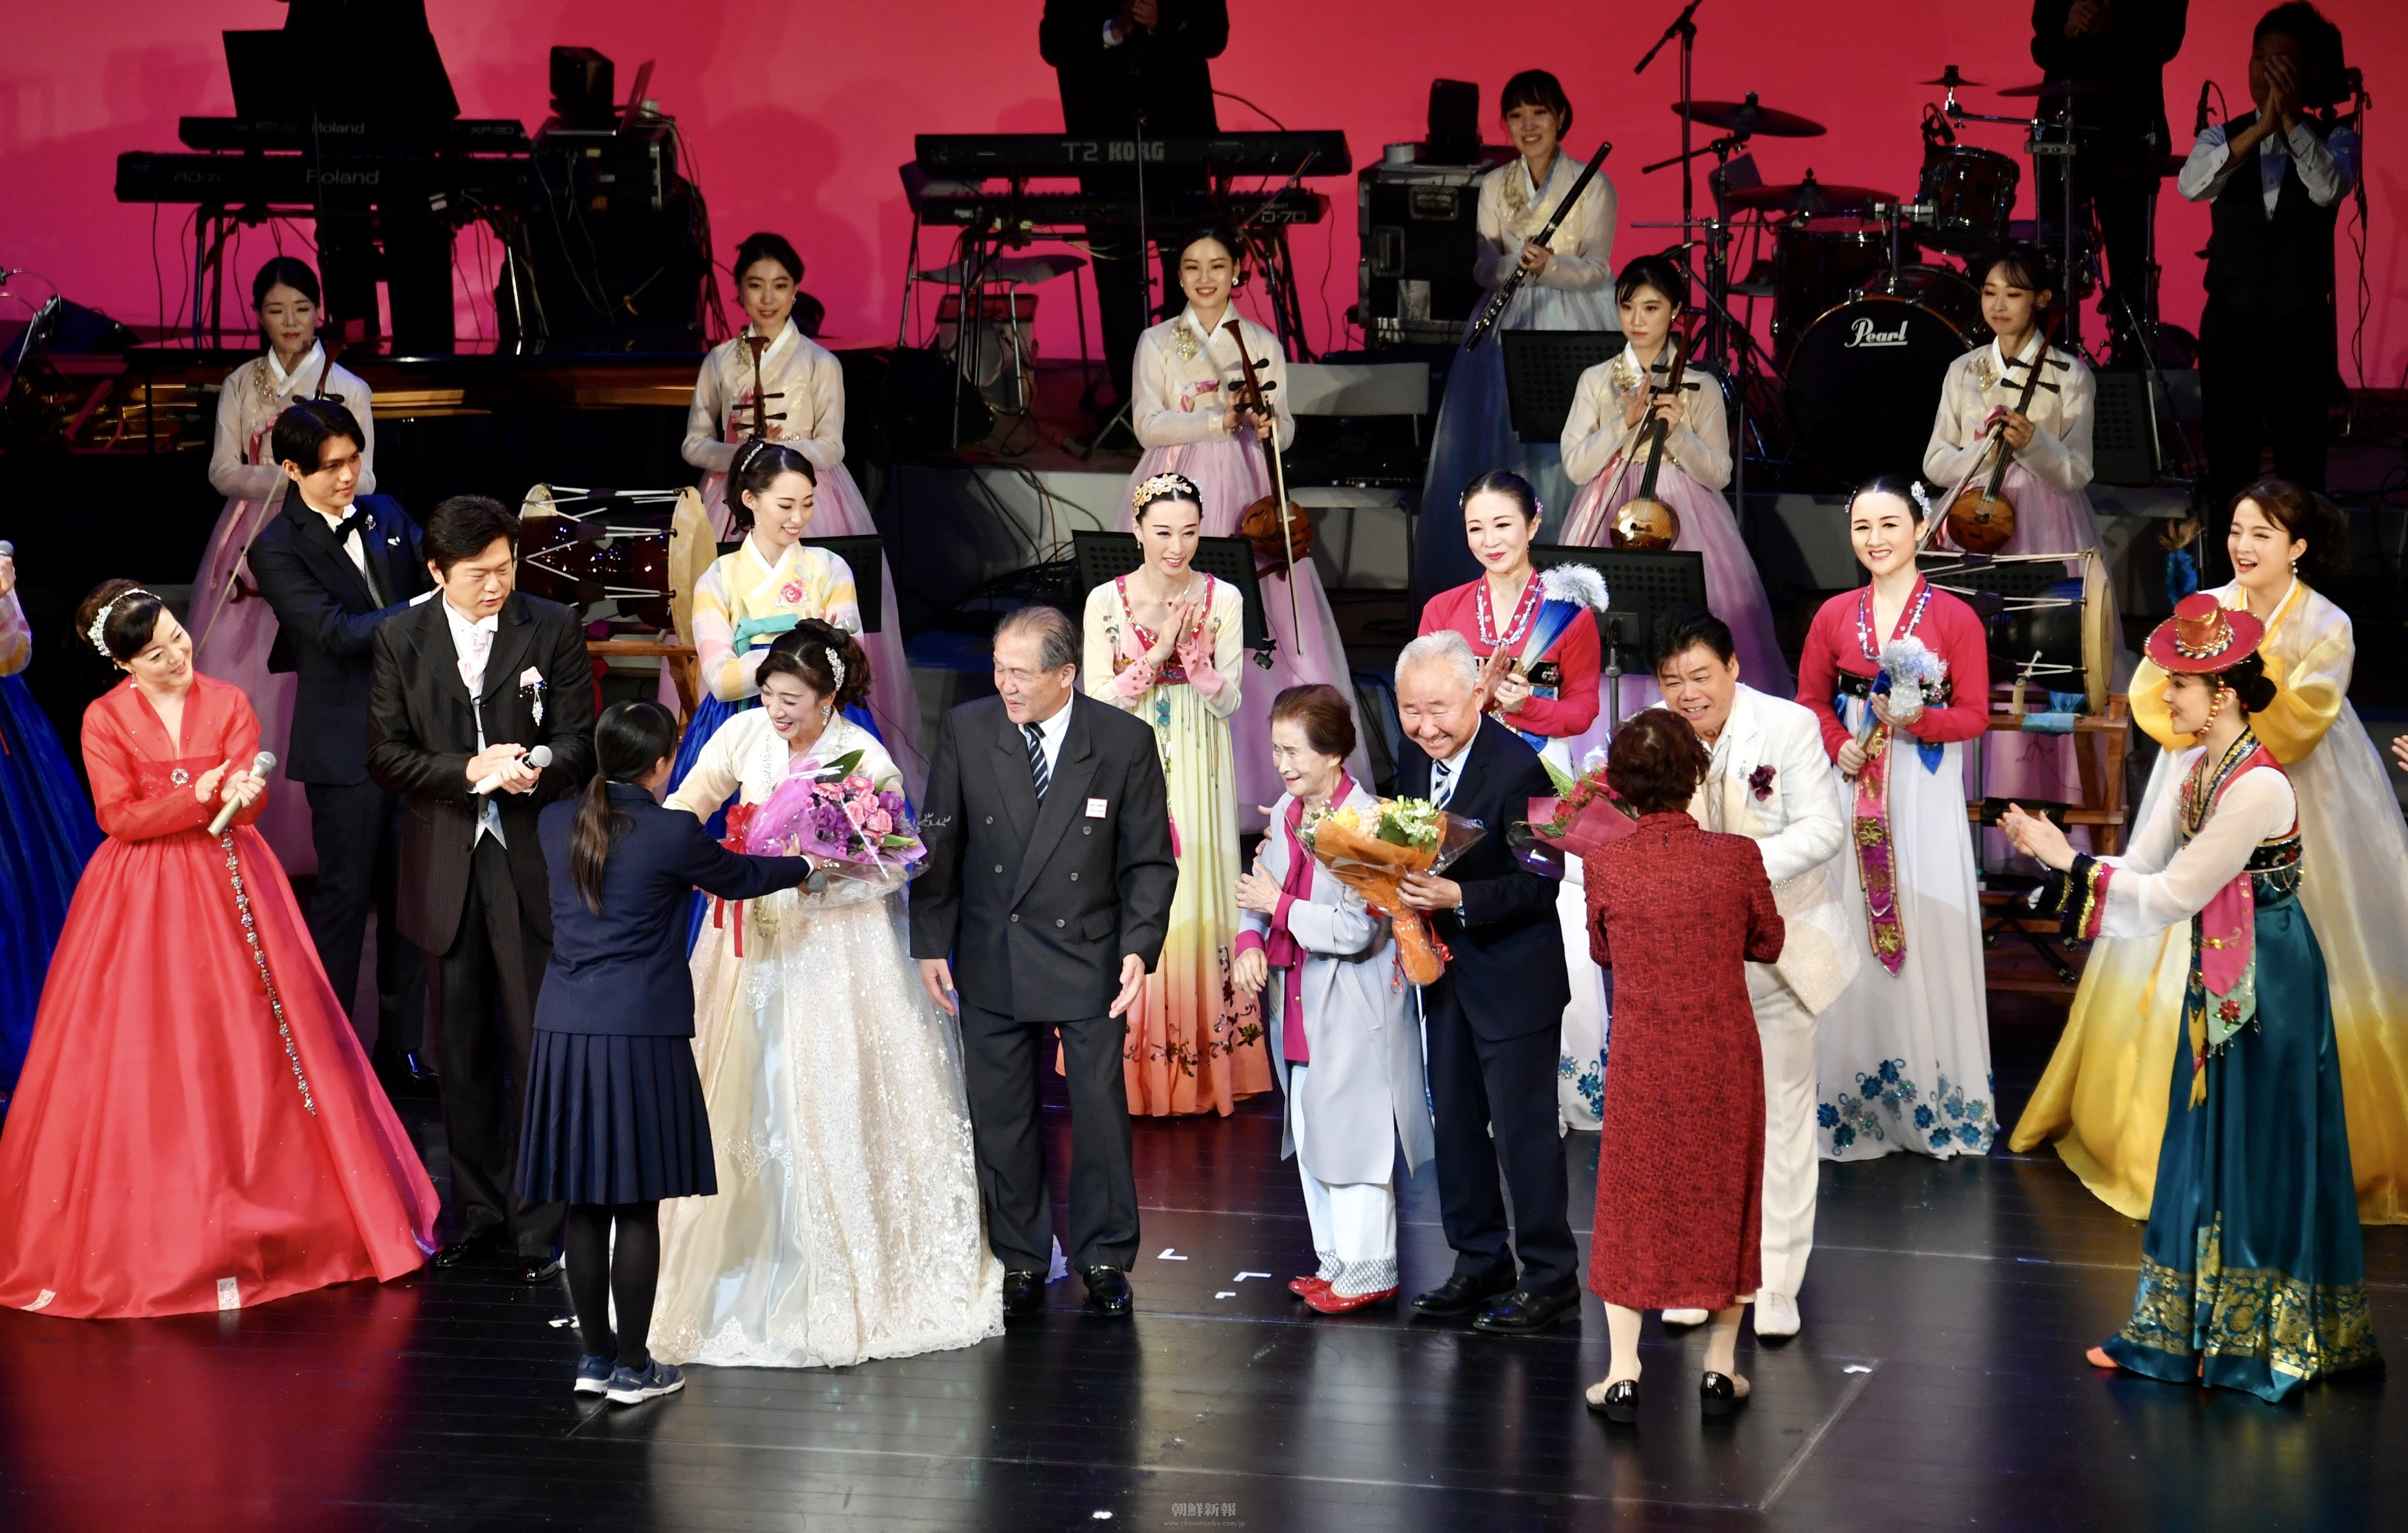 「同胞社会に力を、朝・日関係に希望を」／金剛山歌劇団新潟公演、19年ぶりに実現